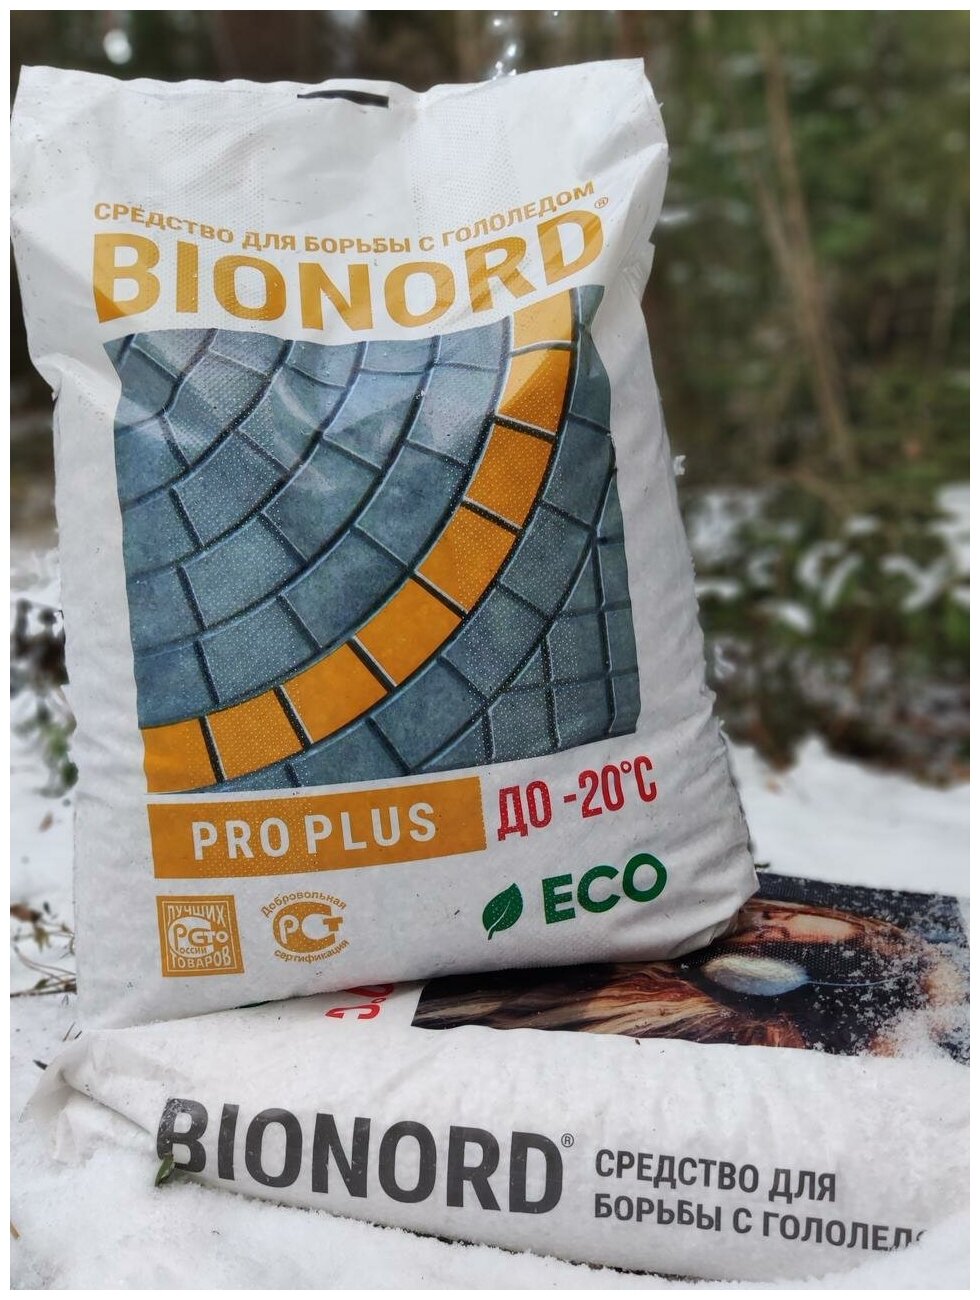 Реагент противогололедный Бионорд Про Плюс -20 в грануле, 23 кг (Bionord Pro Plus), антигололедный - фотография № 4